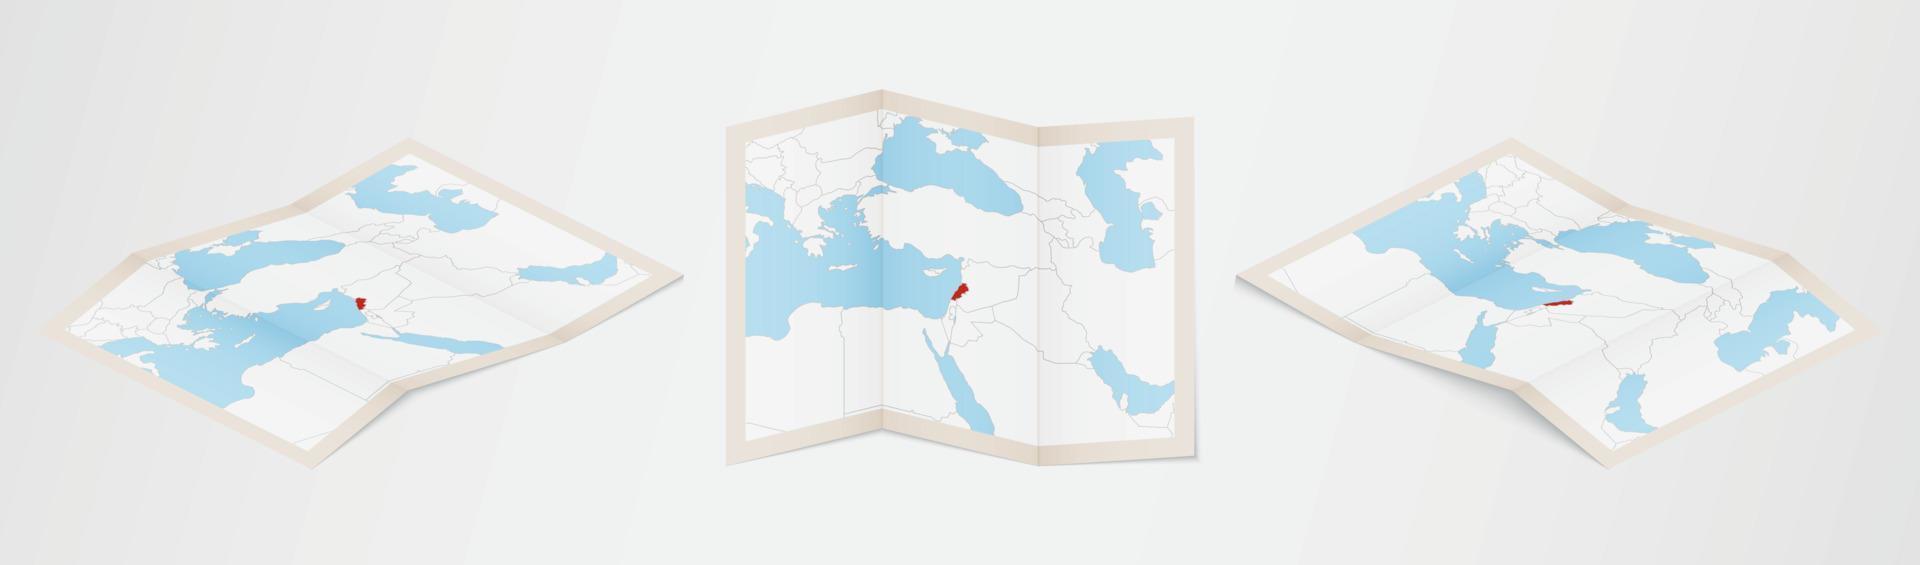 carte pliée du liban en trois versions différentes. vecteur